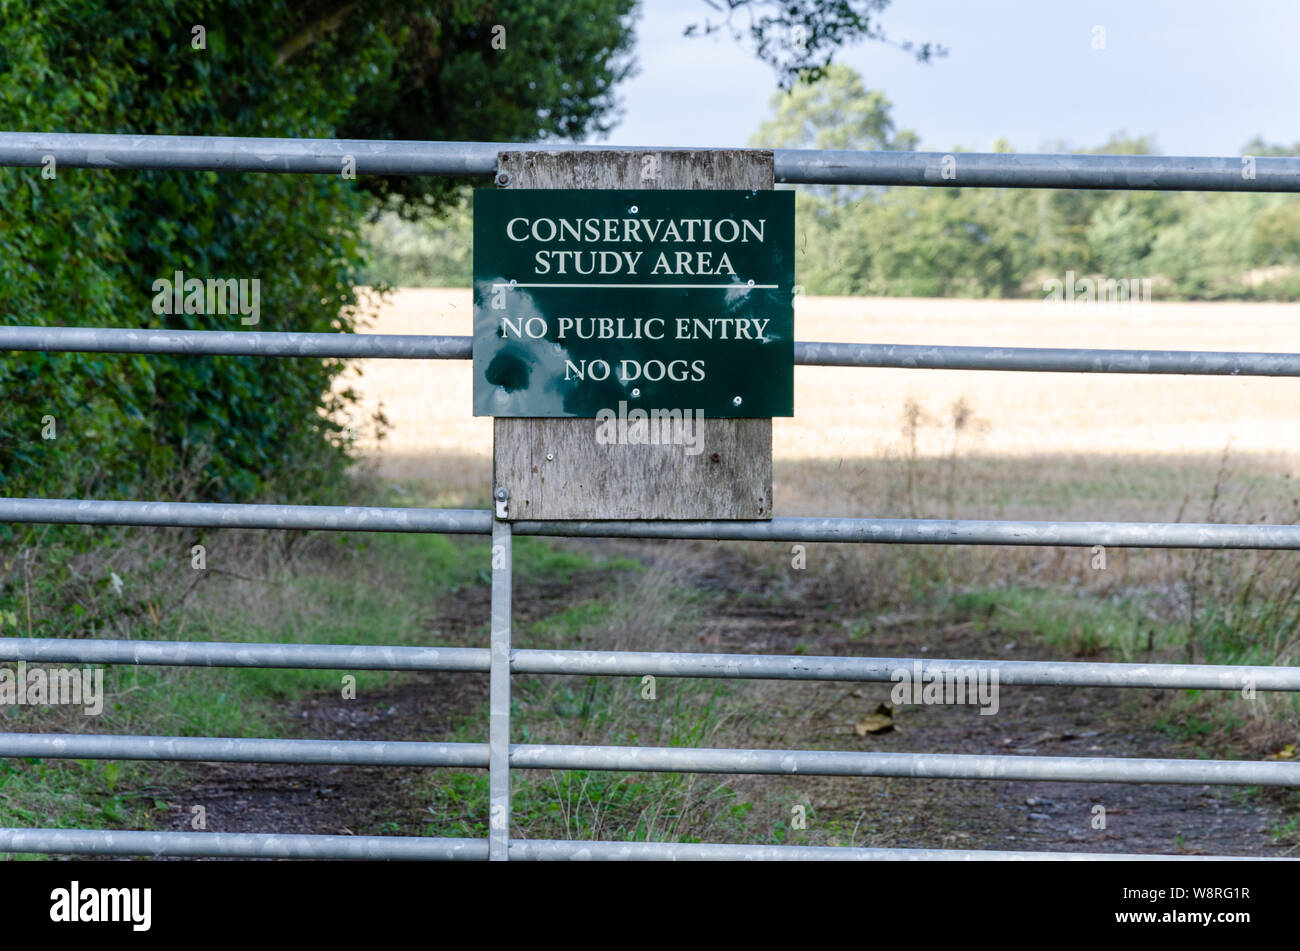 Un segno su una porta di metallo informatori i membri del pubblico che essi non sono ammessi oltre il cancello che è una conservazione area di studio. Foto Stock